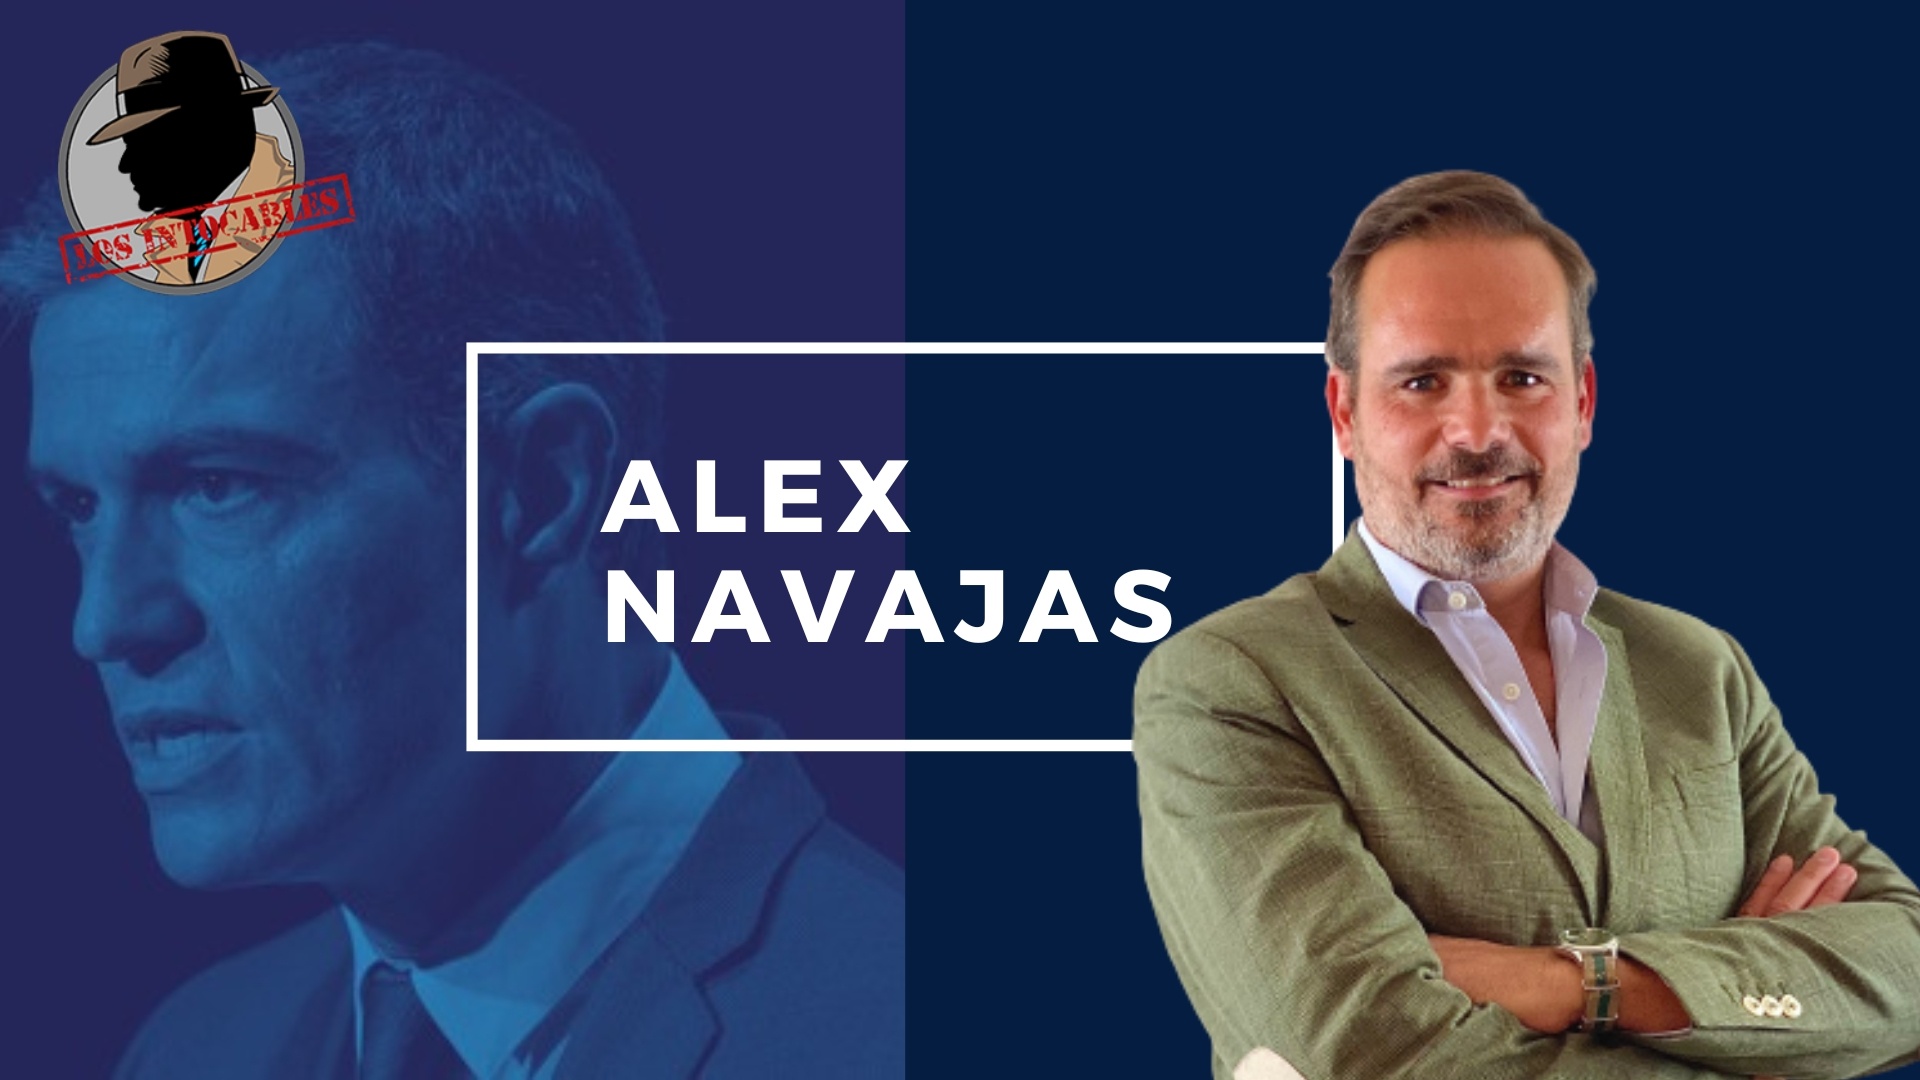 ALEX NAVAJAS: EN DICIEMBRE VAN A DESAPARECER ESTOS POLÍTICOS QUE SOLO SABEN HACER EL RIDÍCULO